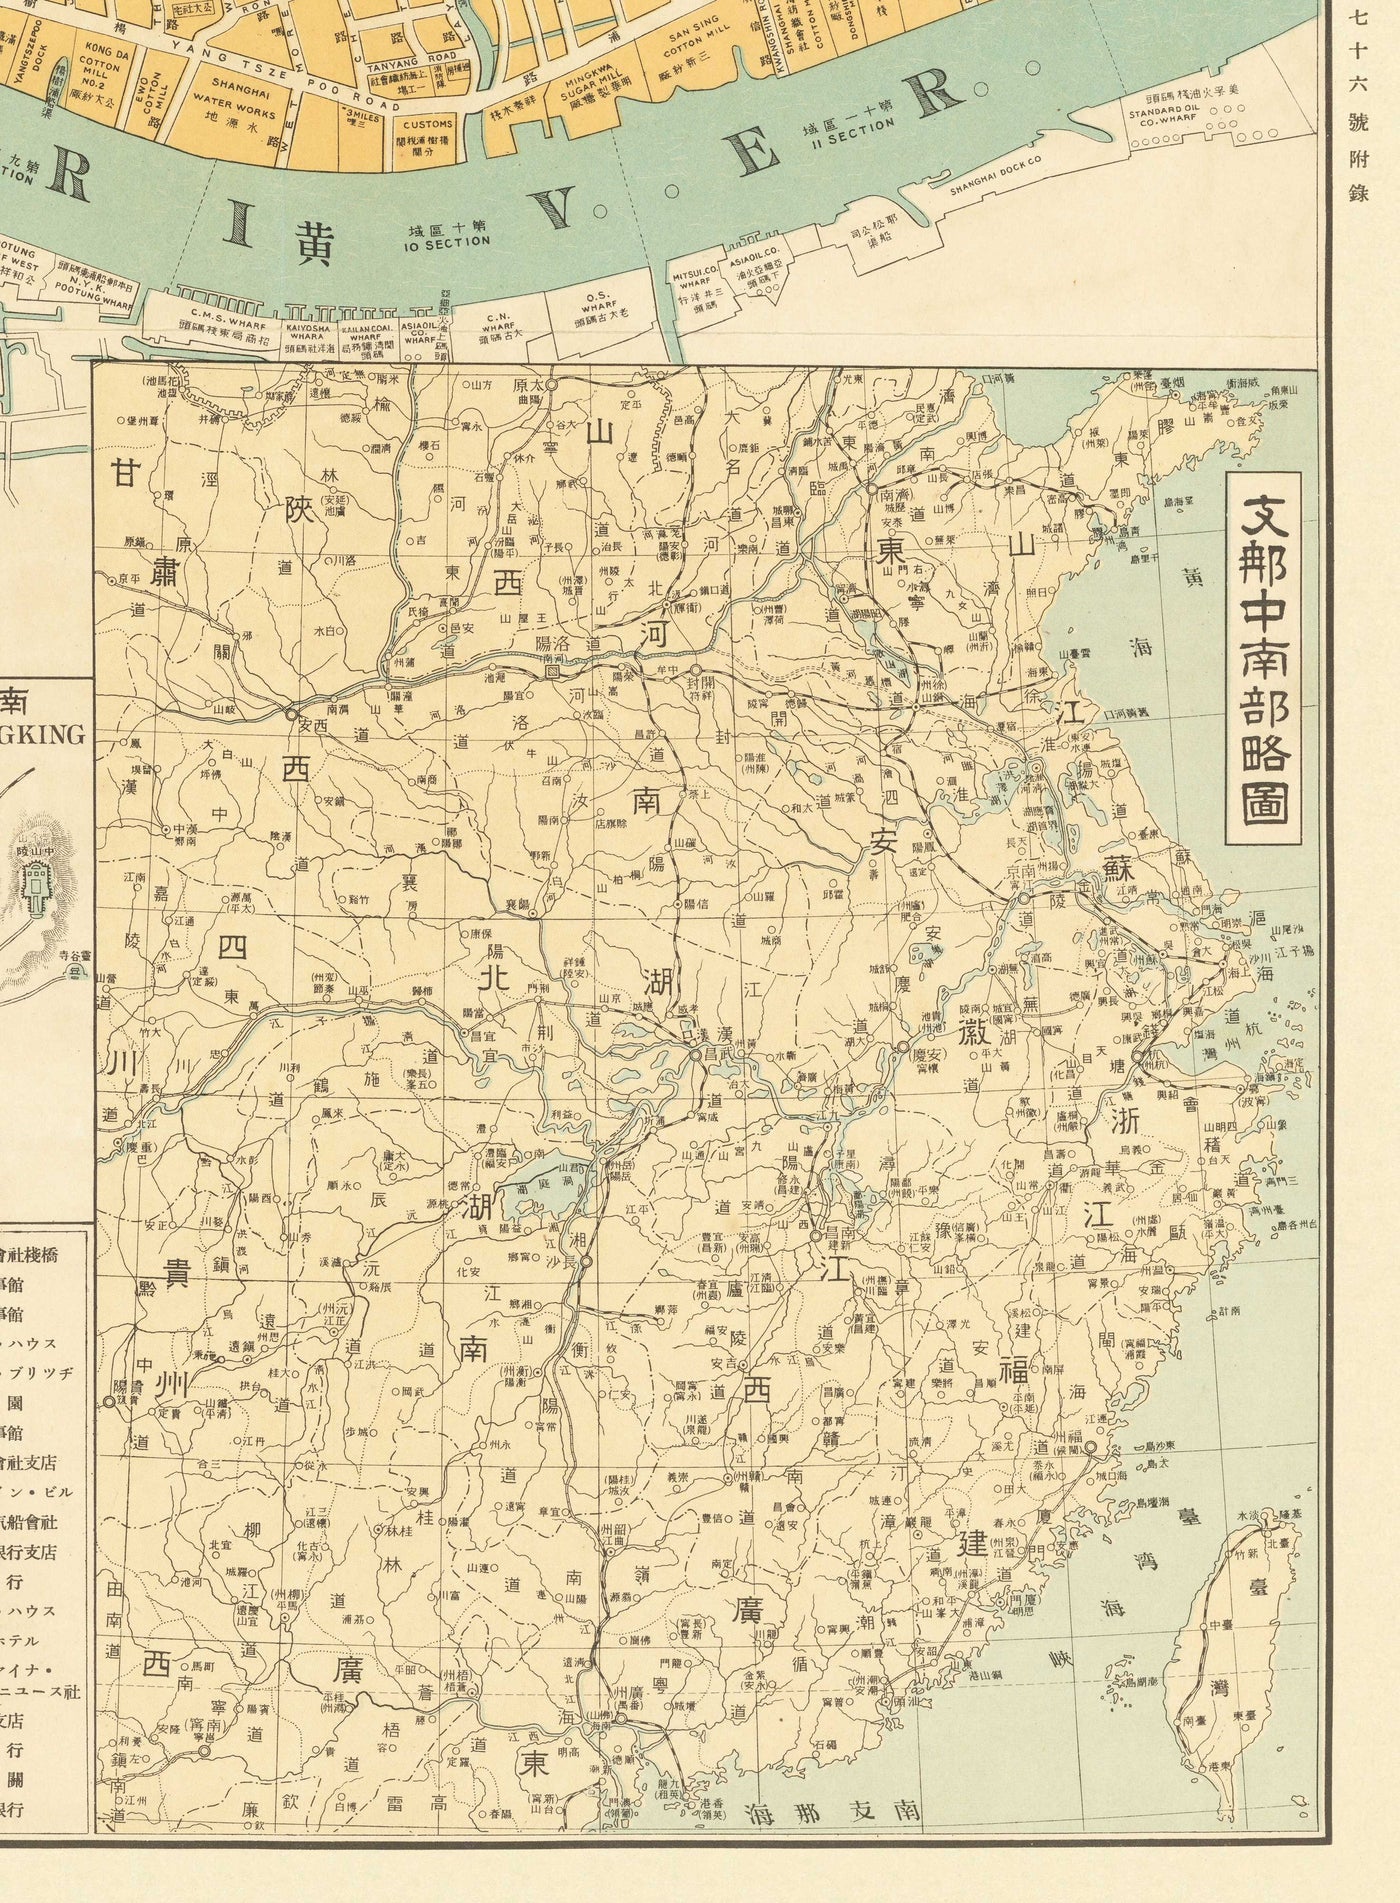 Ancienne carte de Shanghai en 1935 par Osaka Daily News - Rivière Huangpu, district de Yangpu, Pudong, Lujiazui, Jing'an